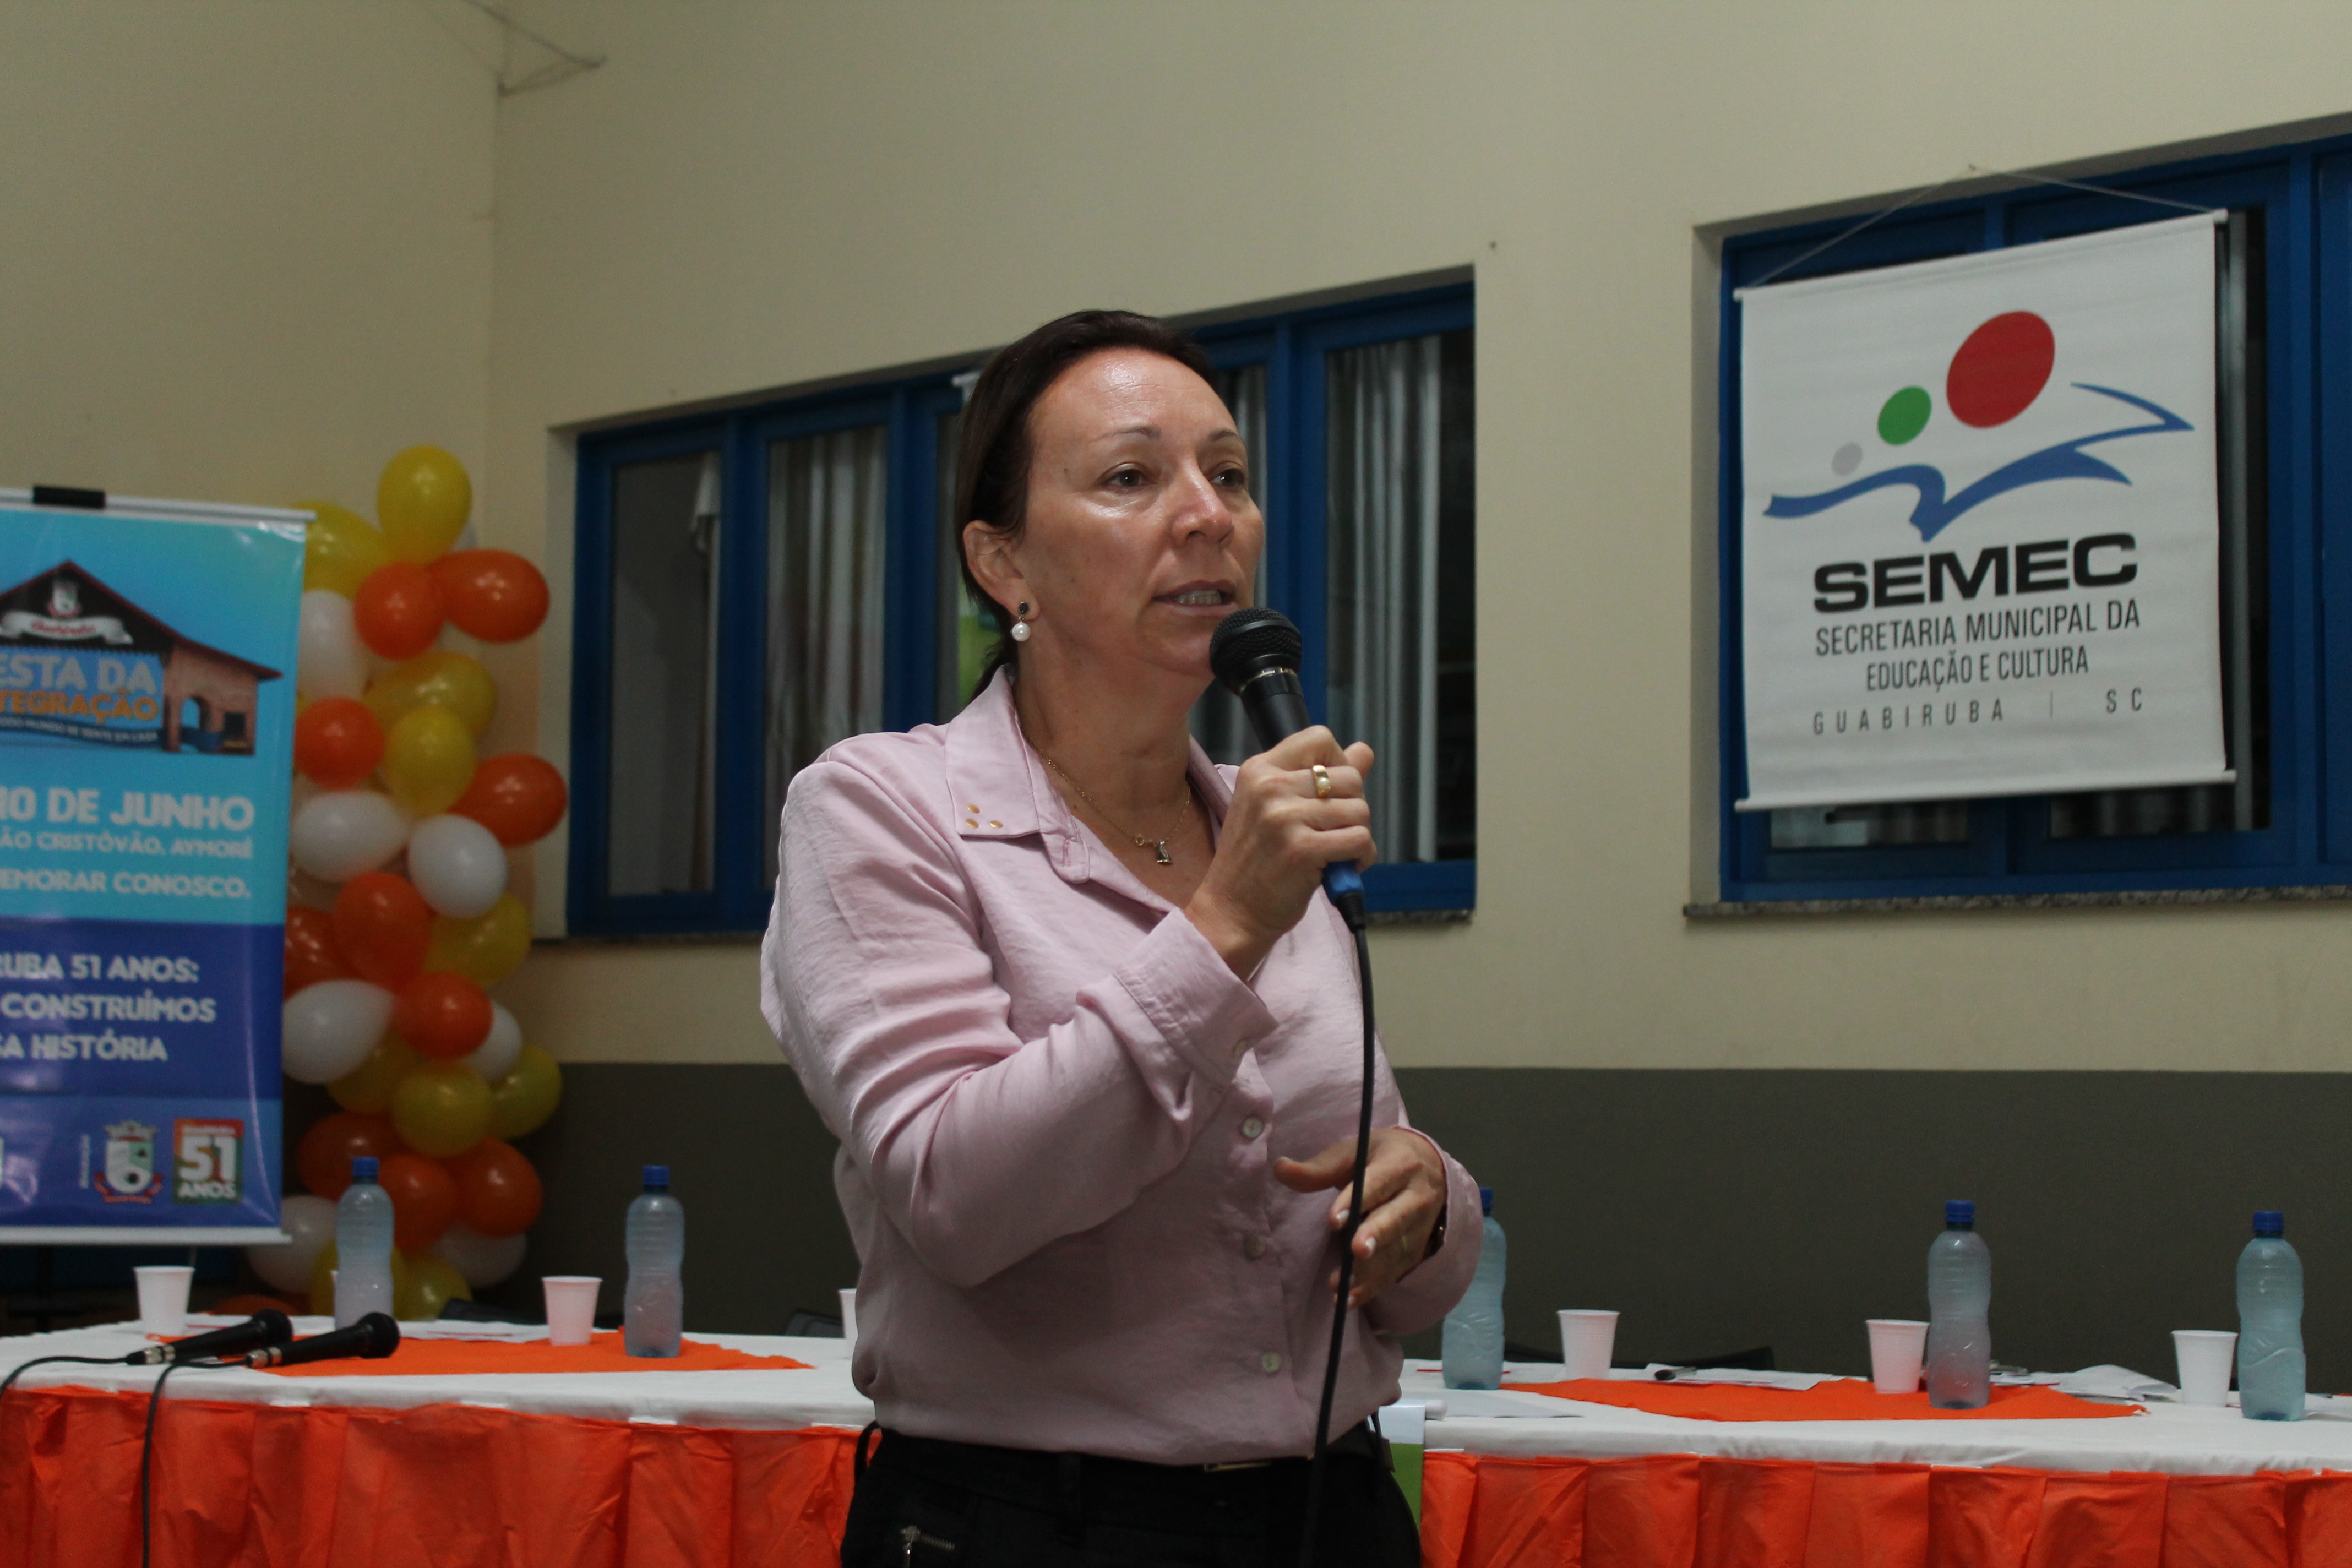 Professora da UNIFEBE participa de Conferência Municipal de Educação em Guabiruba